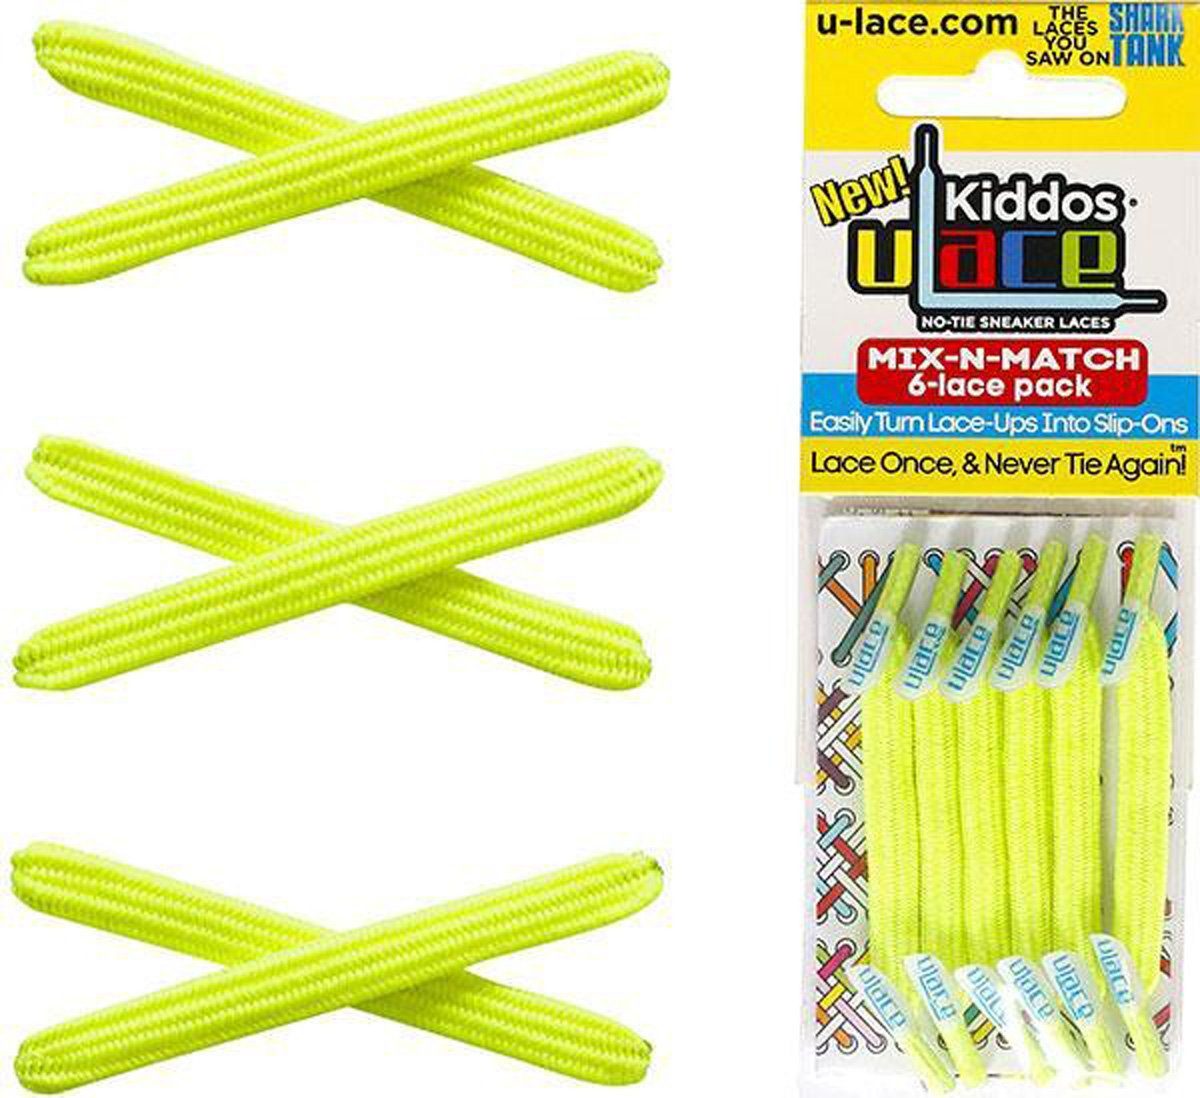 U-Laces Schnürsenkel Kiddos - elastische Schnürsenkel mit Wiederhaken für Kinder Neon Yellow